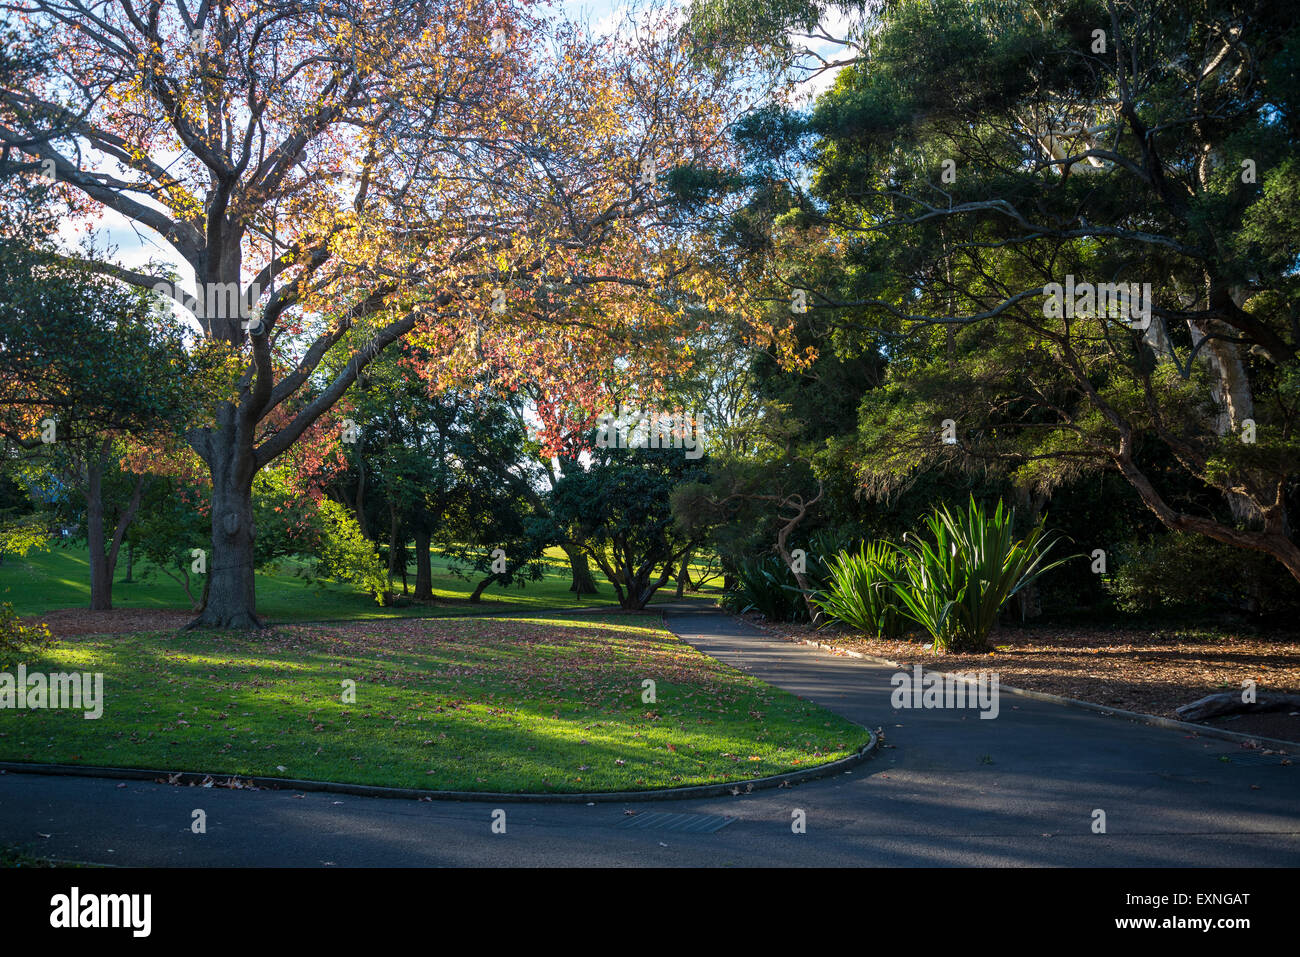 Royal Botanic Gardens, Sydney, Australia Stock Photo